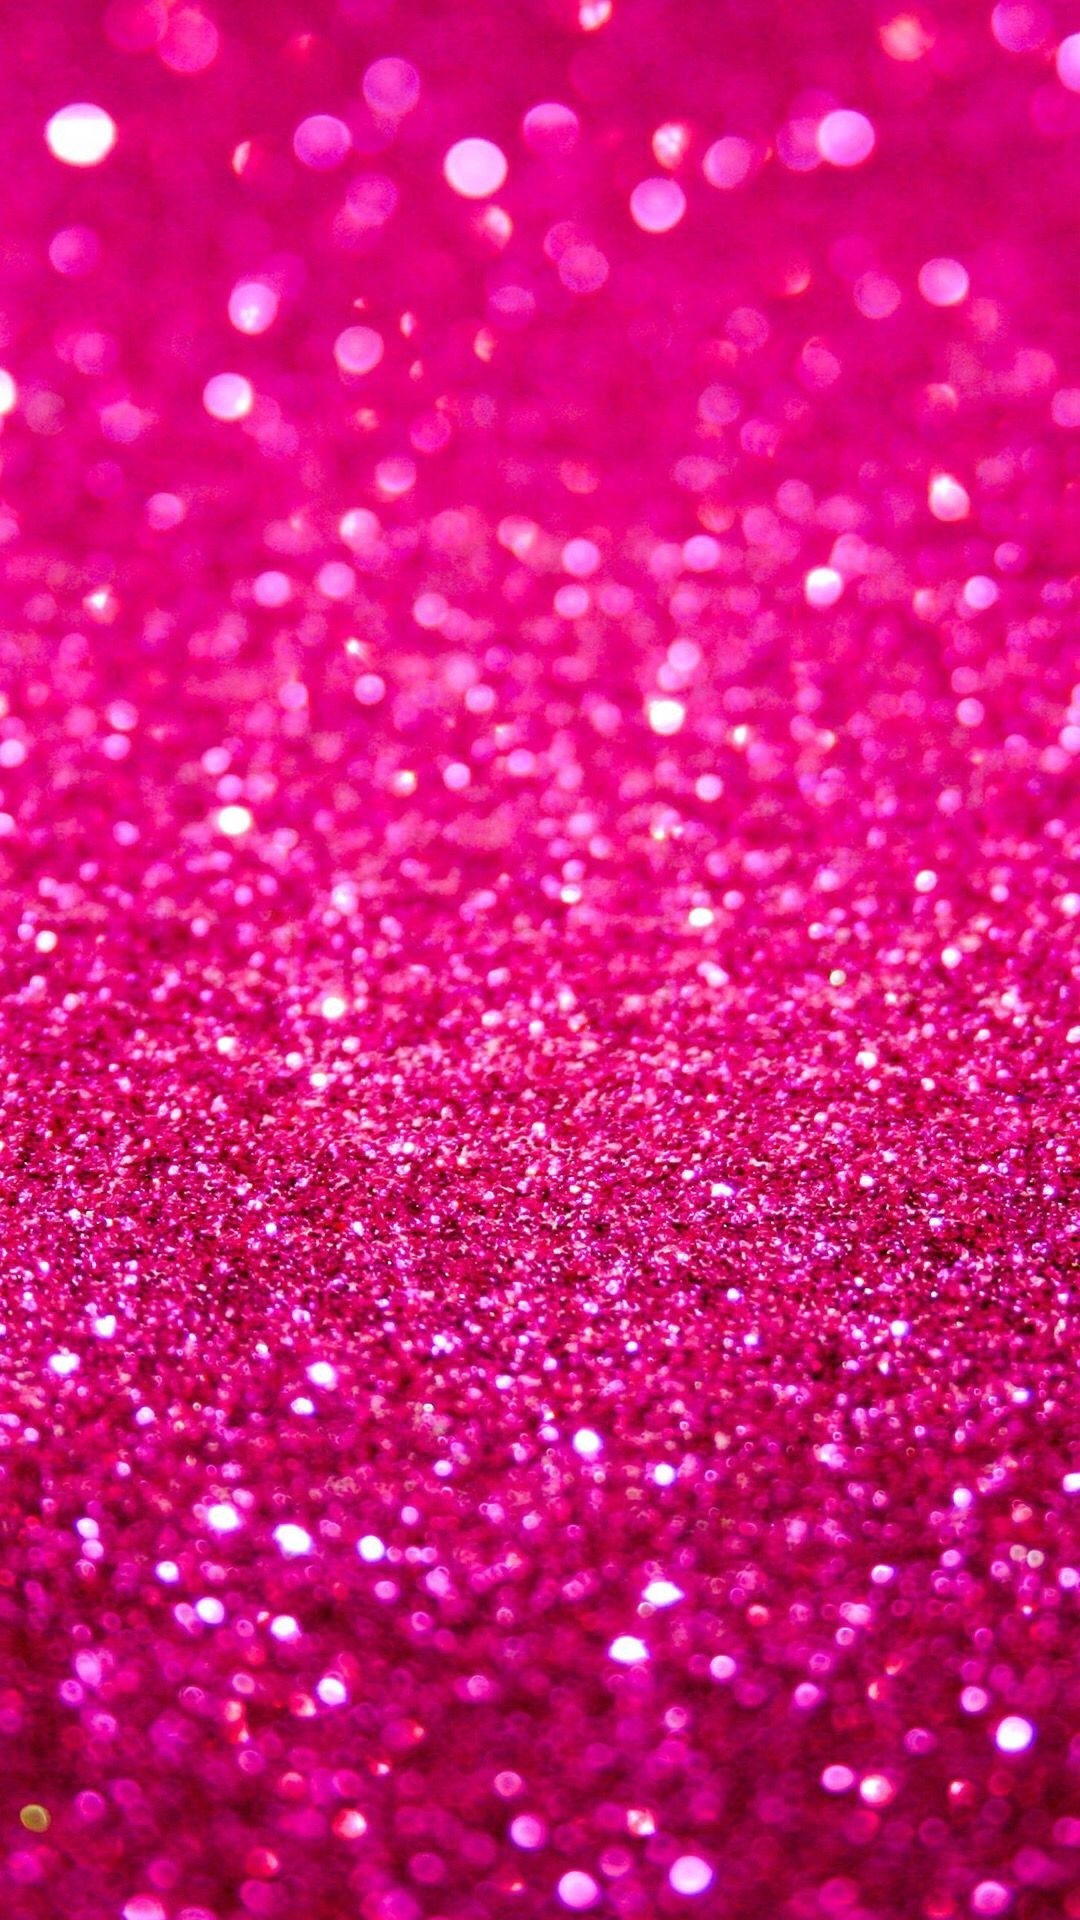 Glitter iPhone 6 wallpaper